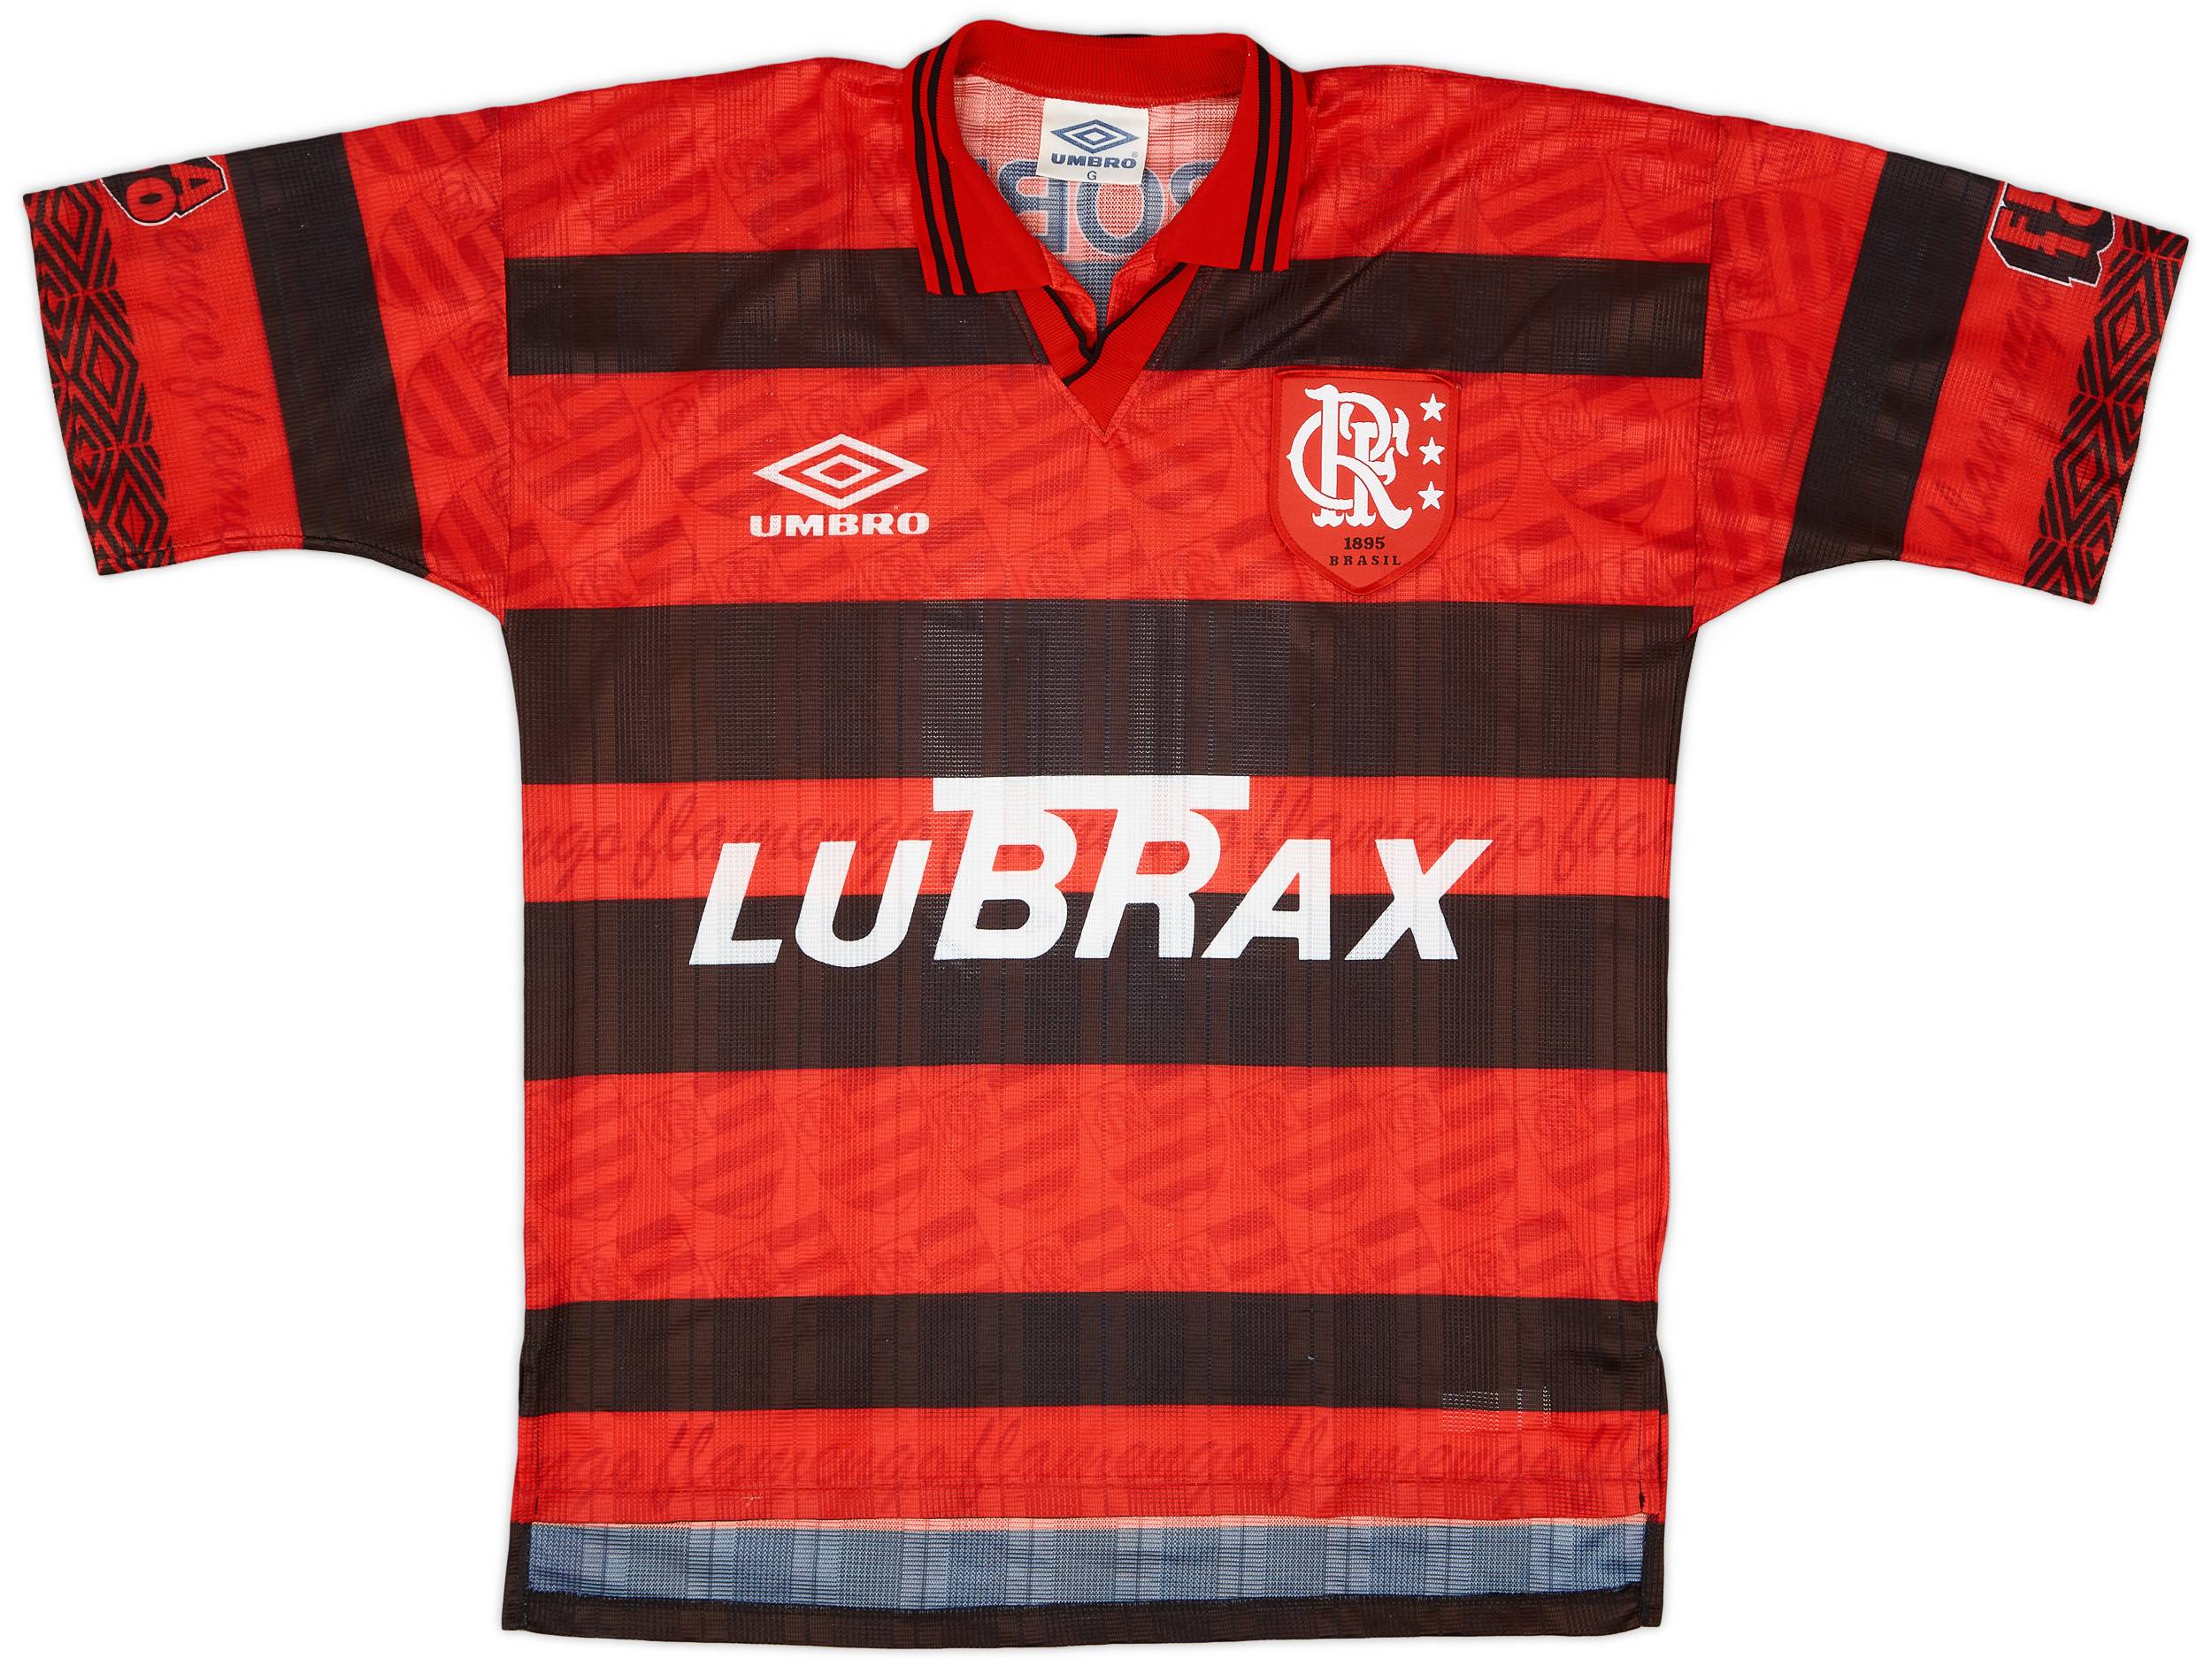 1995-96 Flamengo Centenary Home Shirt #10 - 9/10 - (L)